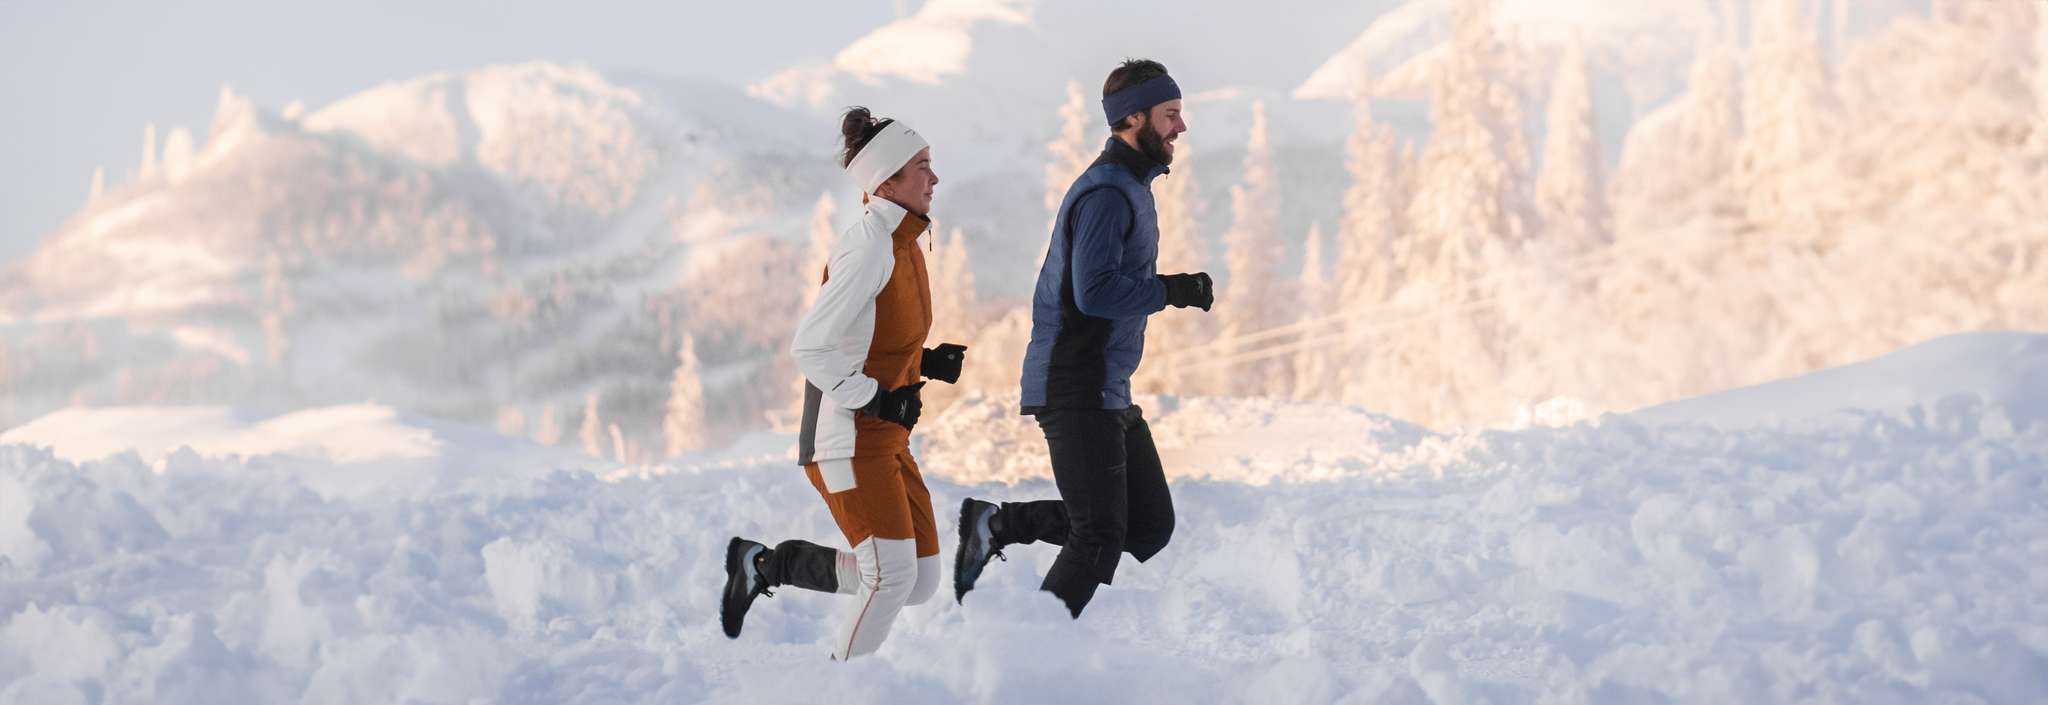 Mies ja nainen juoksemassa talvella lumisessa tunturimaisemassa.